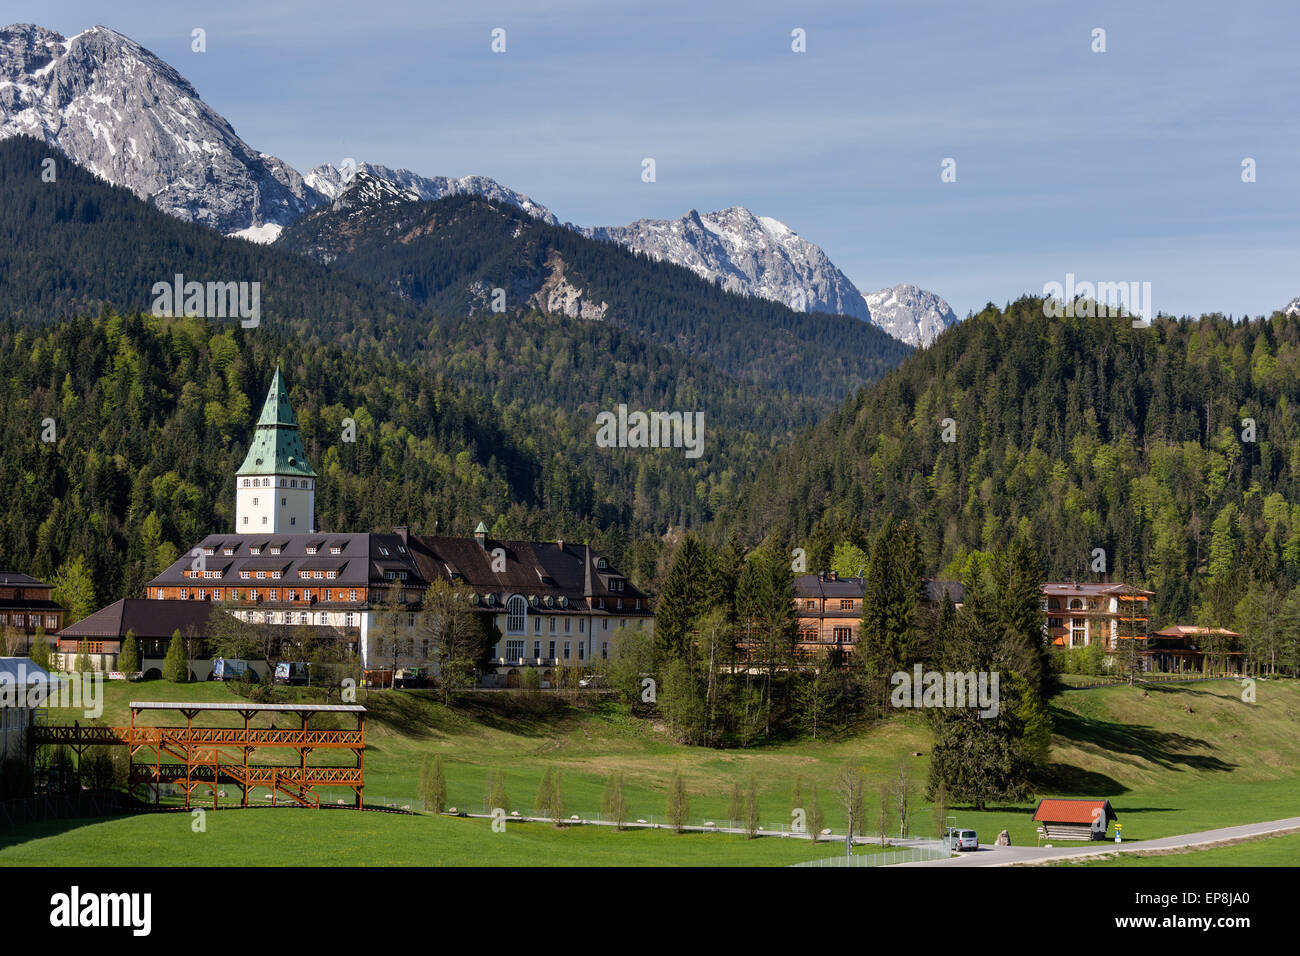 Schloss Elmau Castle Hotel, sede del Vertice G7 2015, stand presso il centro stampa sulla sinistra, Klais Foto Stock